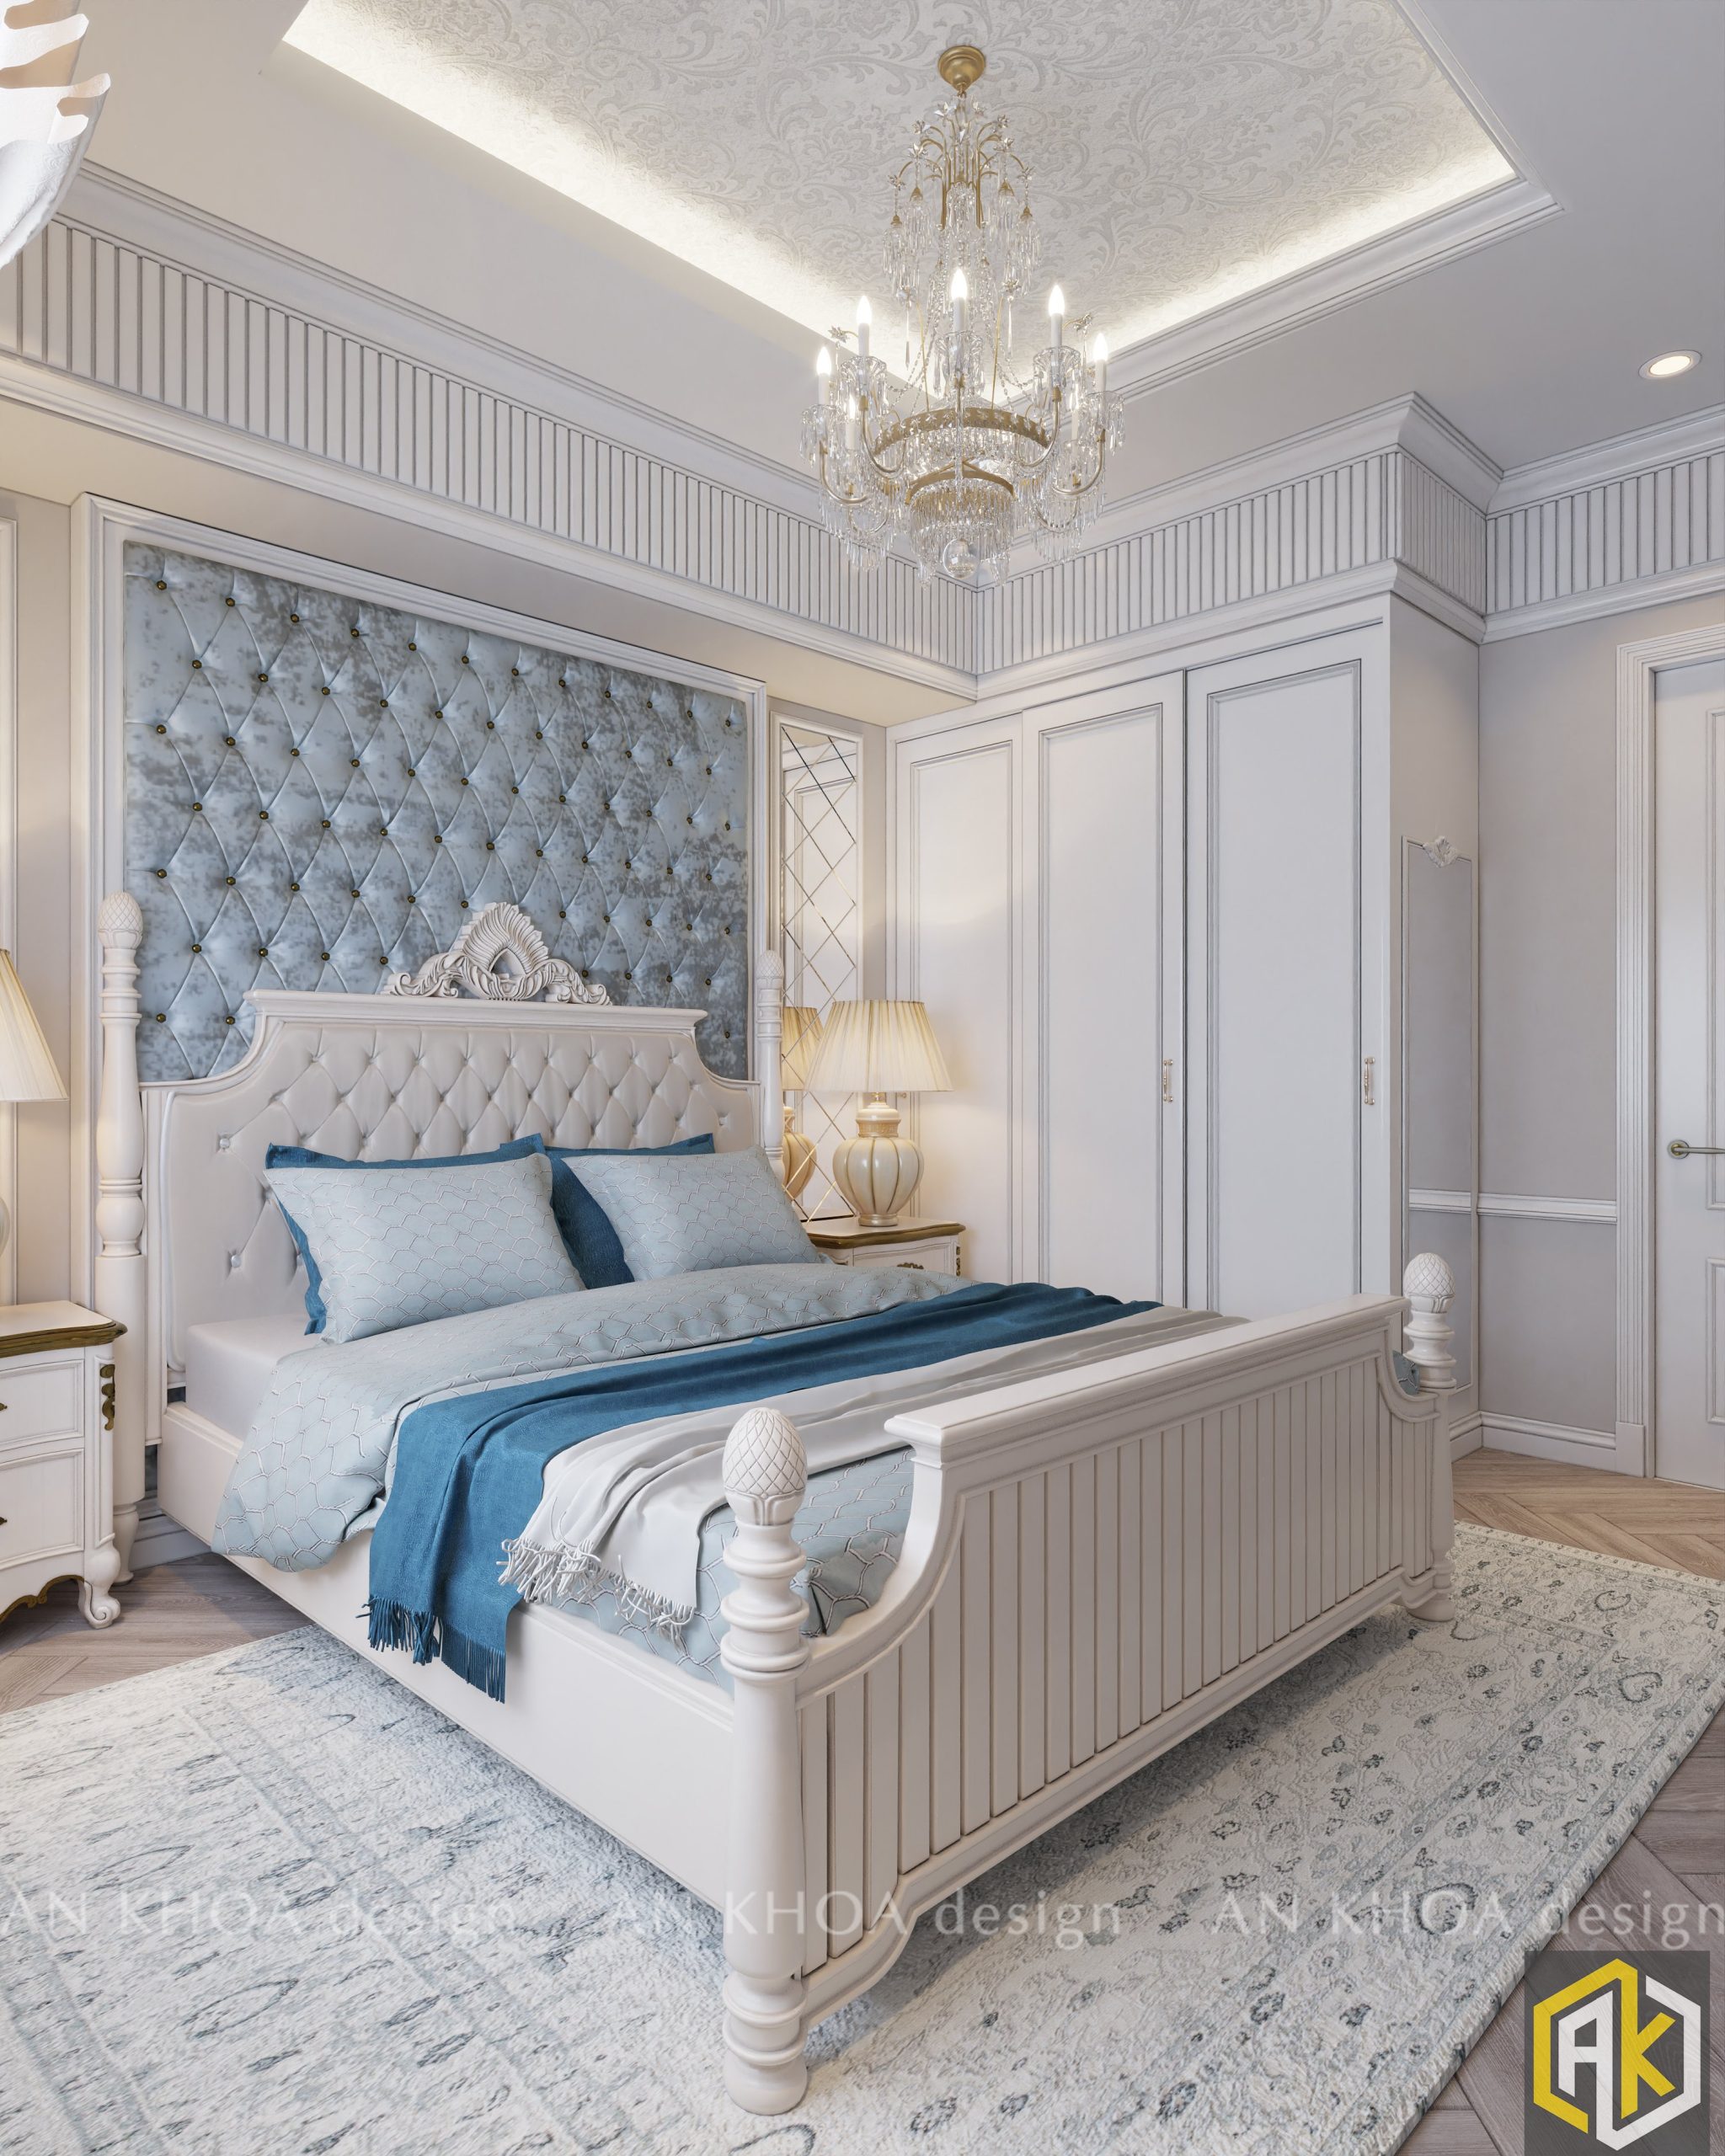 Thiết kế nội thất phong cách Luxury phòng ngủ - AnKhoa Design